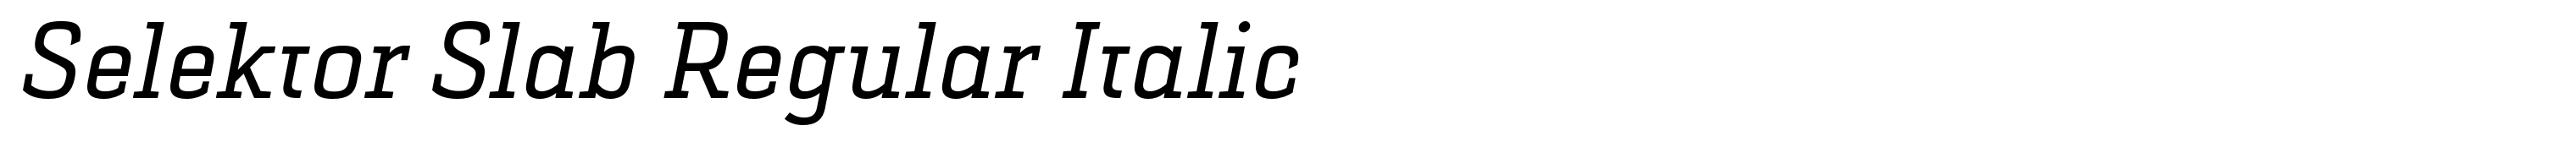 Selektor Slab Regular Italic